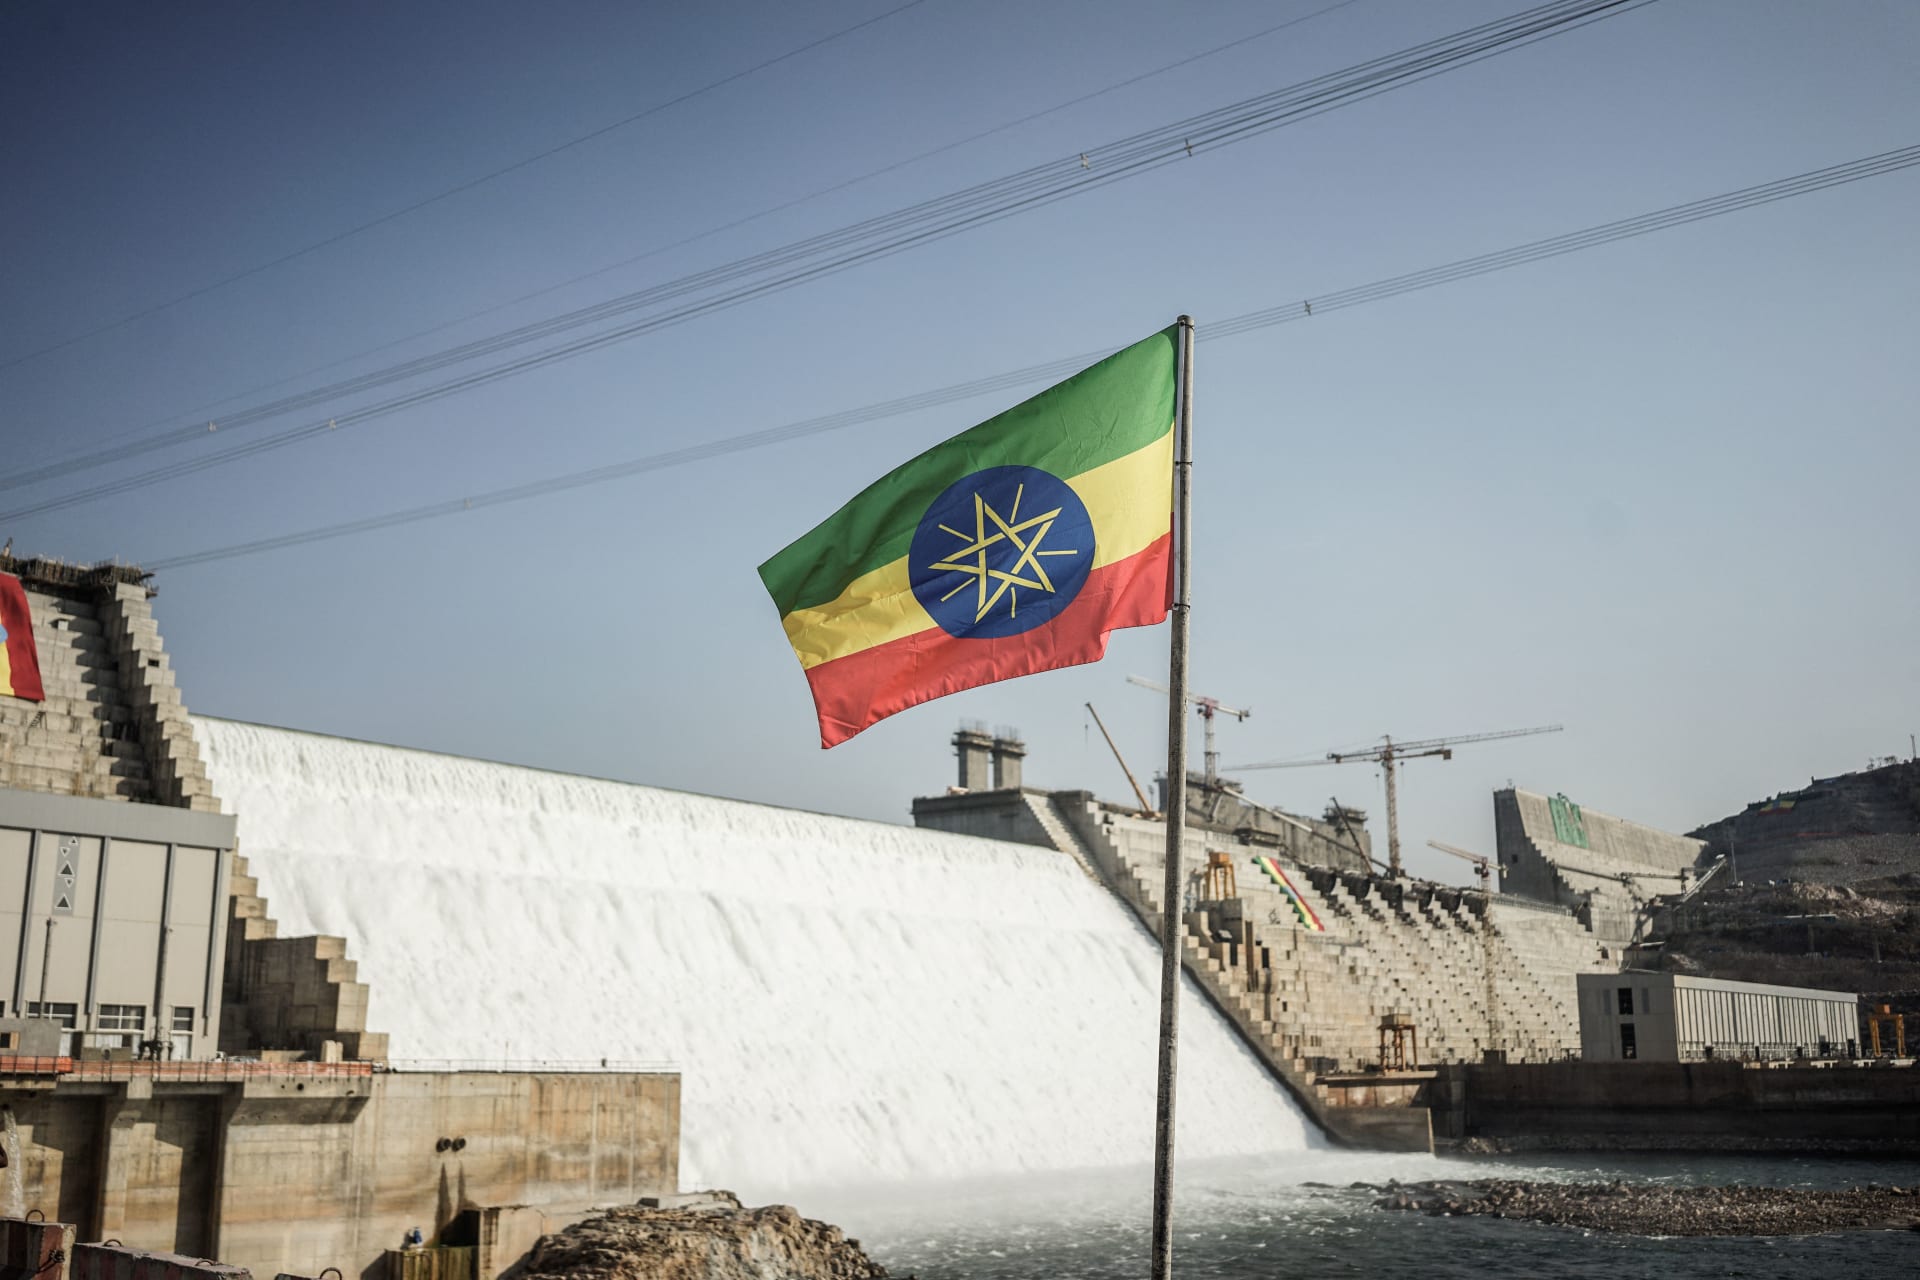 إثيوبيا ترد على إعلان مصر انتهاء المحادثات الأخيرة بشأن سد النهضة "دون نتيجة"